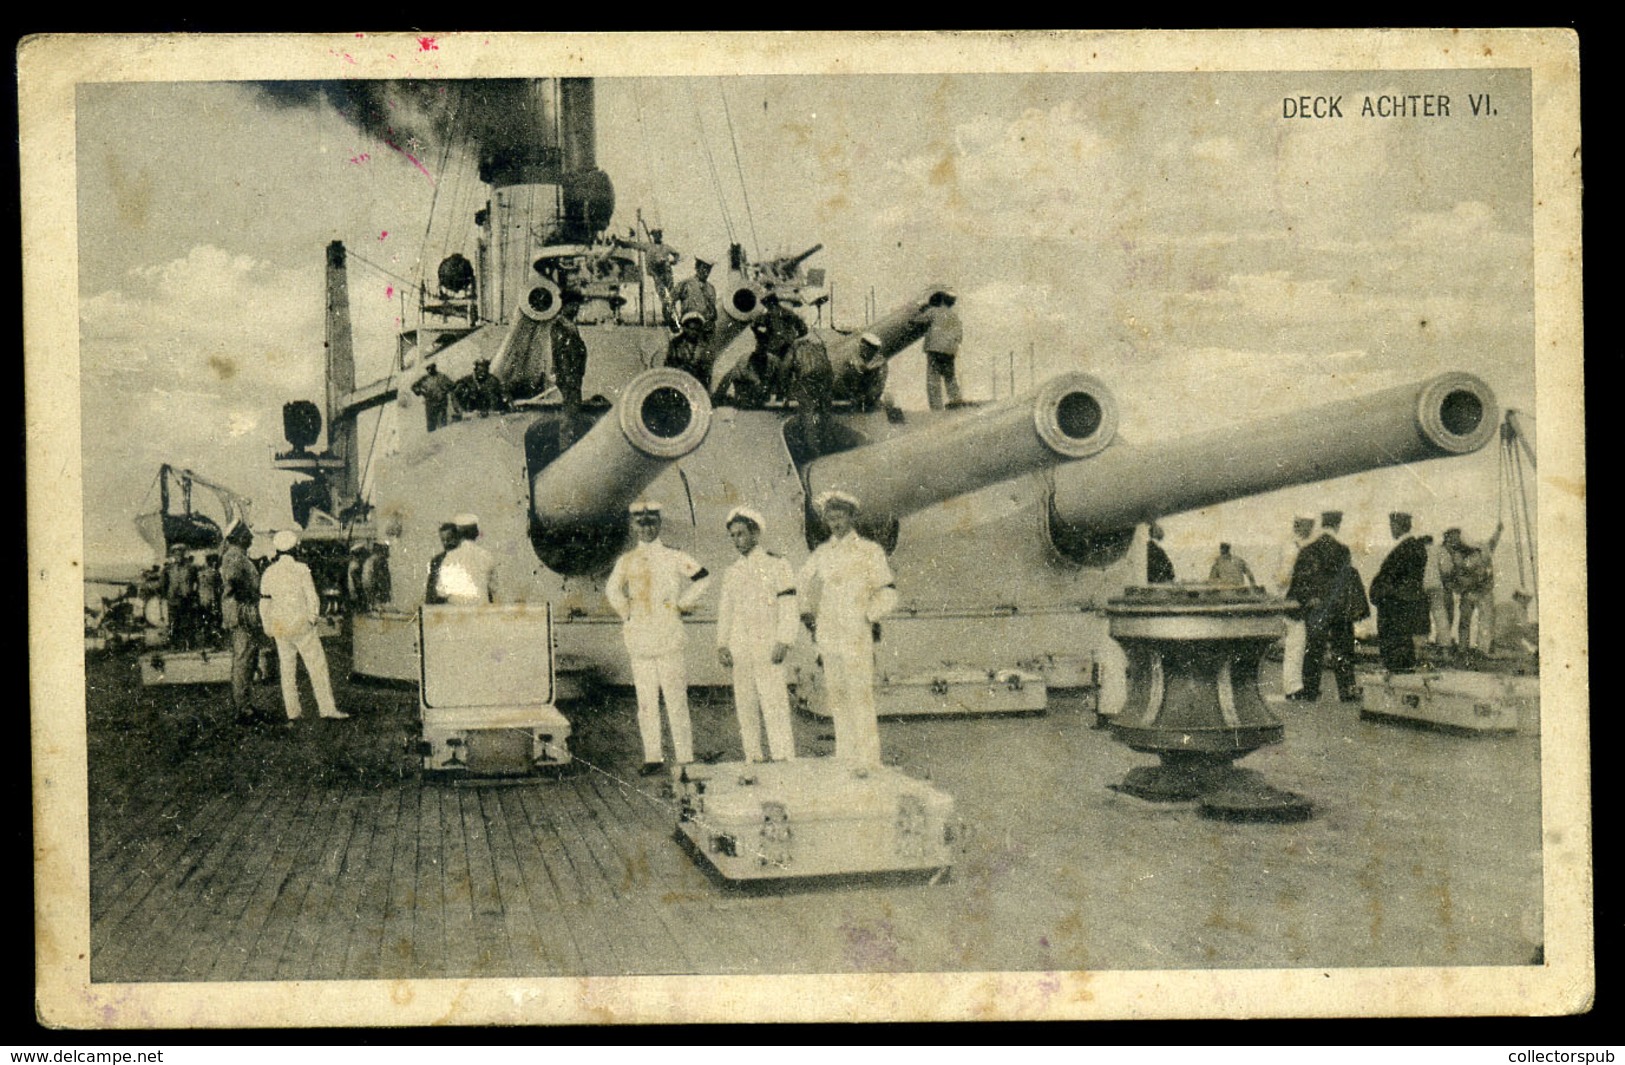 93736 K.u.K. Haditengerészet, I.VH Képeslap SMS Babenberg Bélyegzéssel - Gebraucht